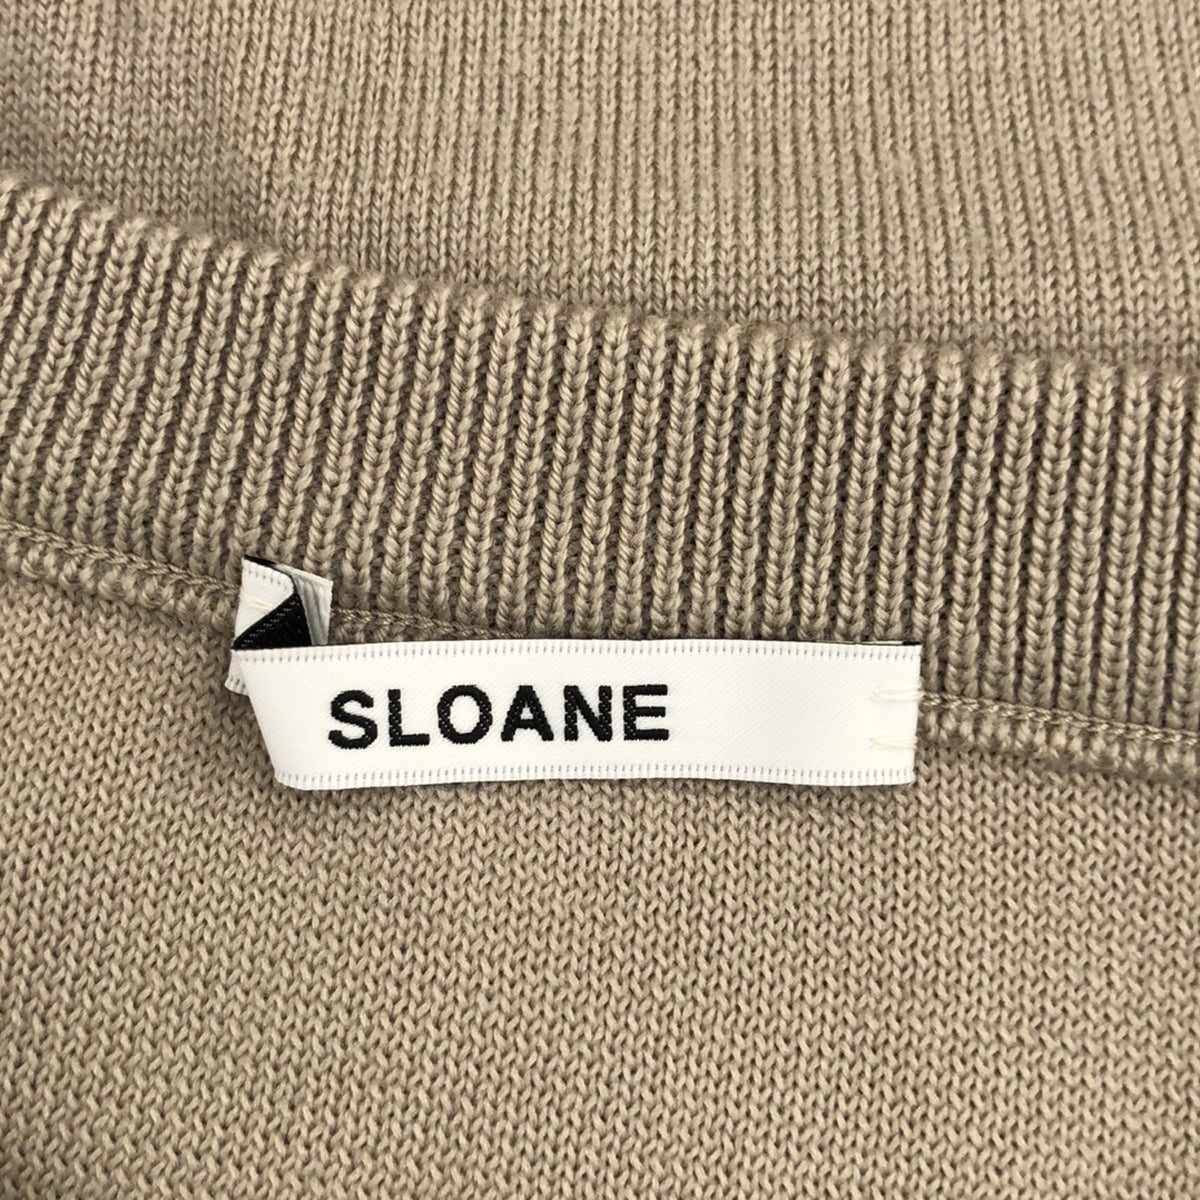 SLOANE / スローン | 12G 天竺二重編みクルーネック ニット | 3 | レディース